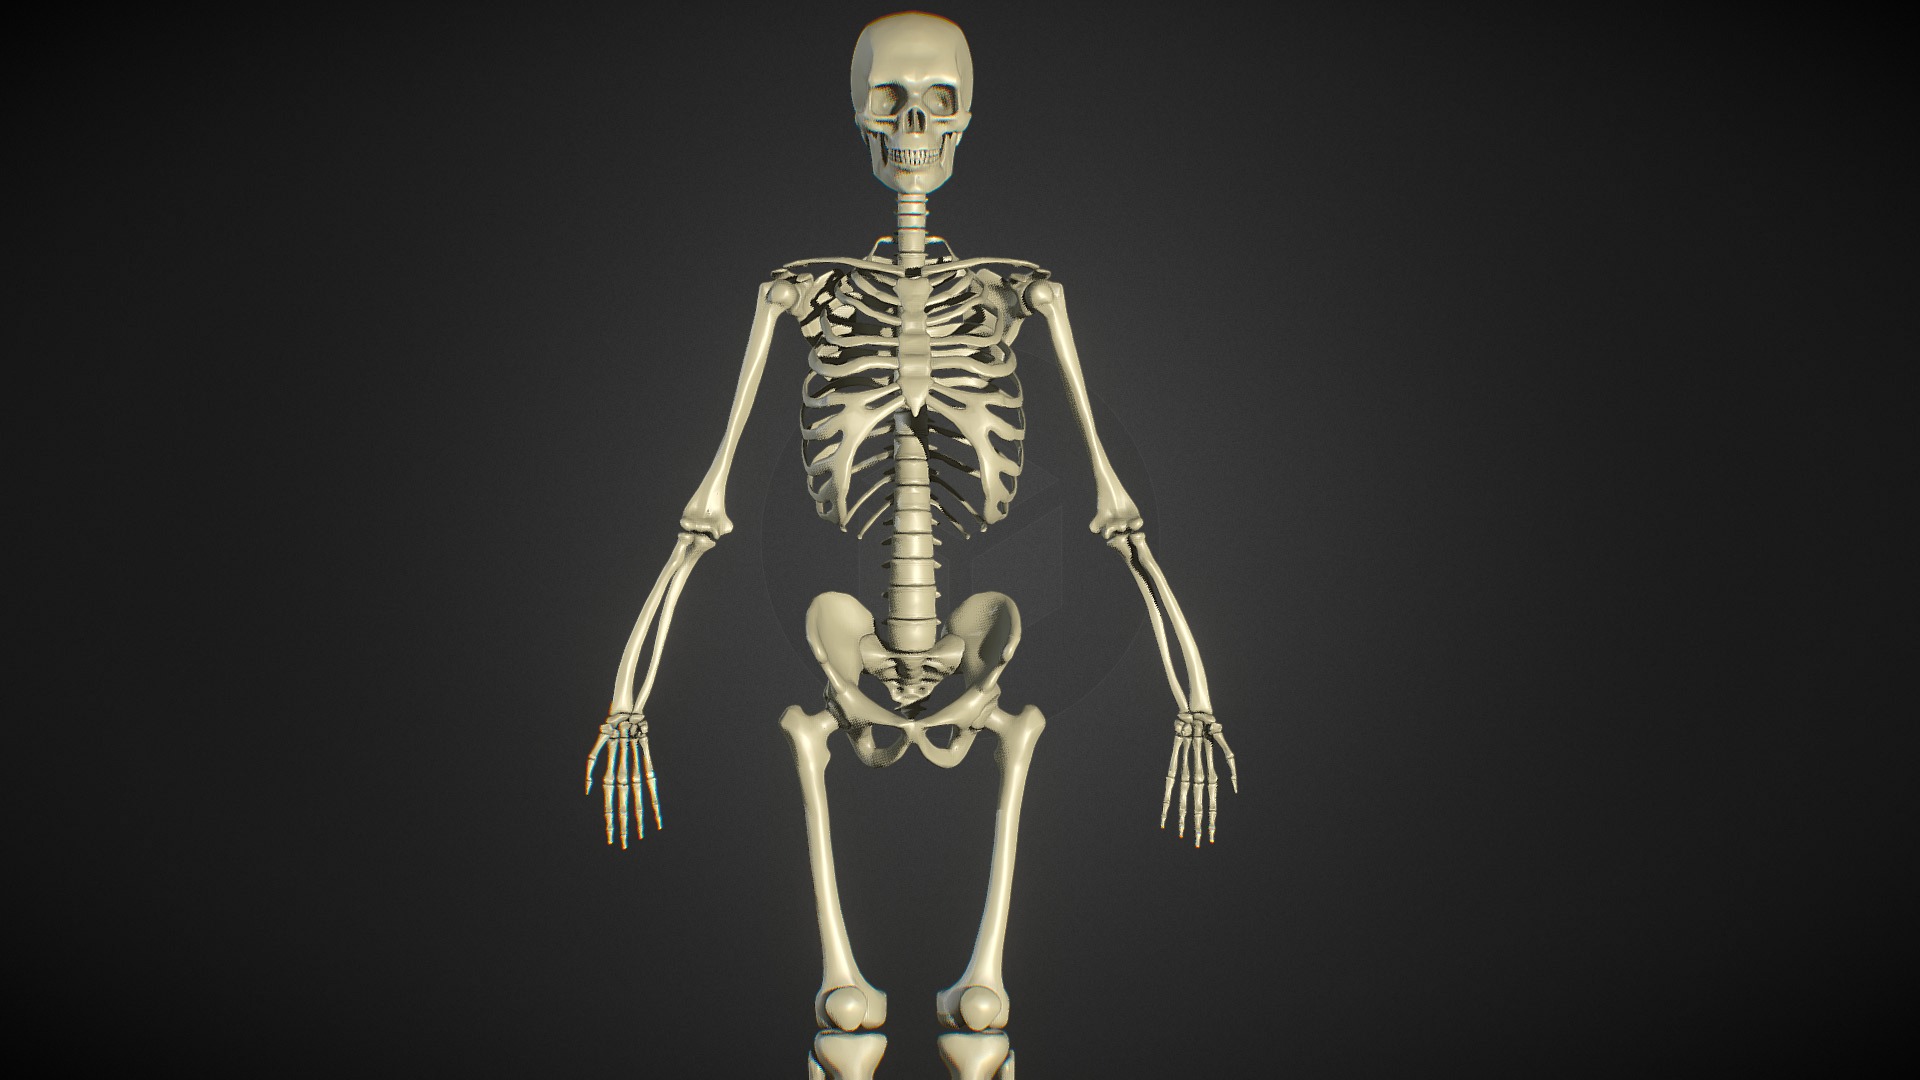 basic zbrush skeleton download free